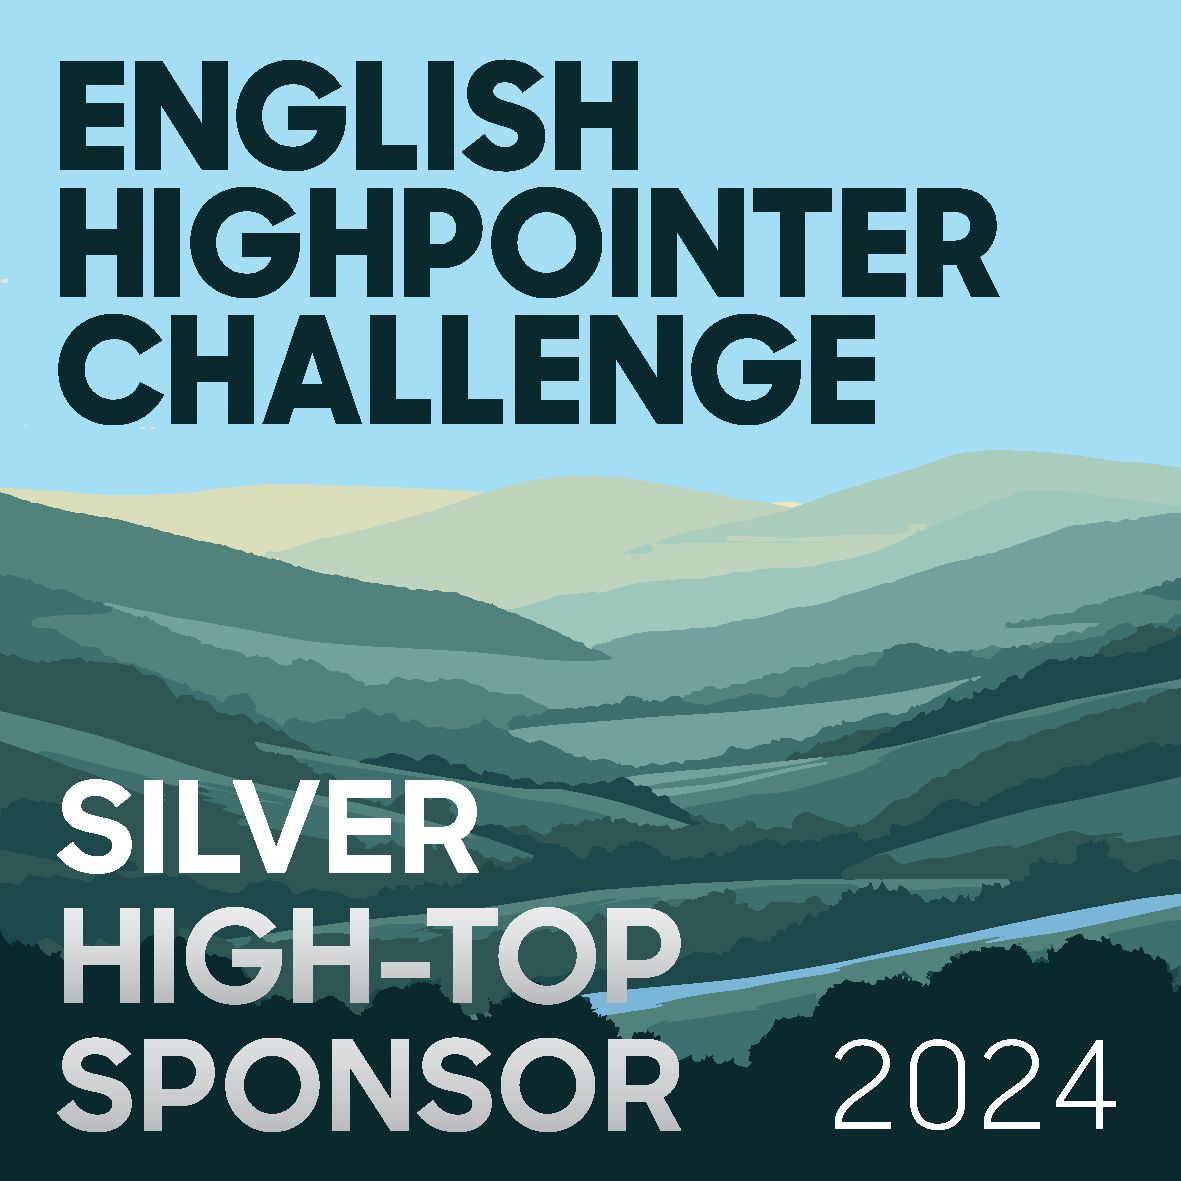 . Silver High-Top sponsor of Black Hillin West Yorkshire!